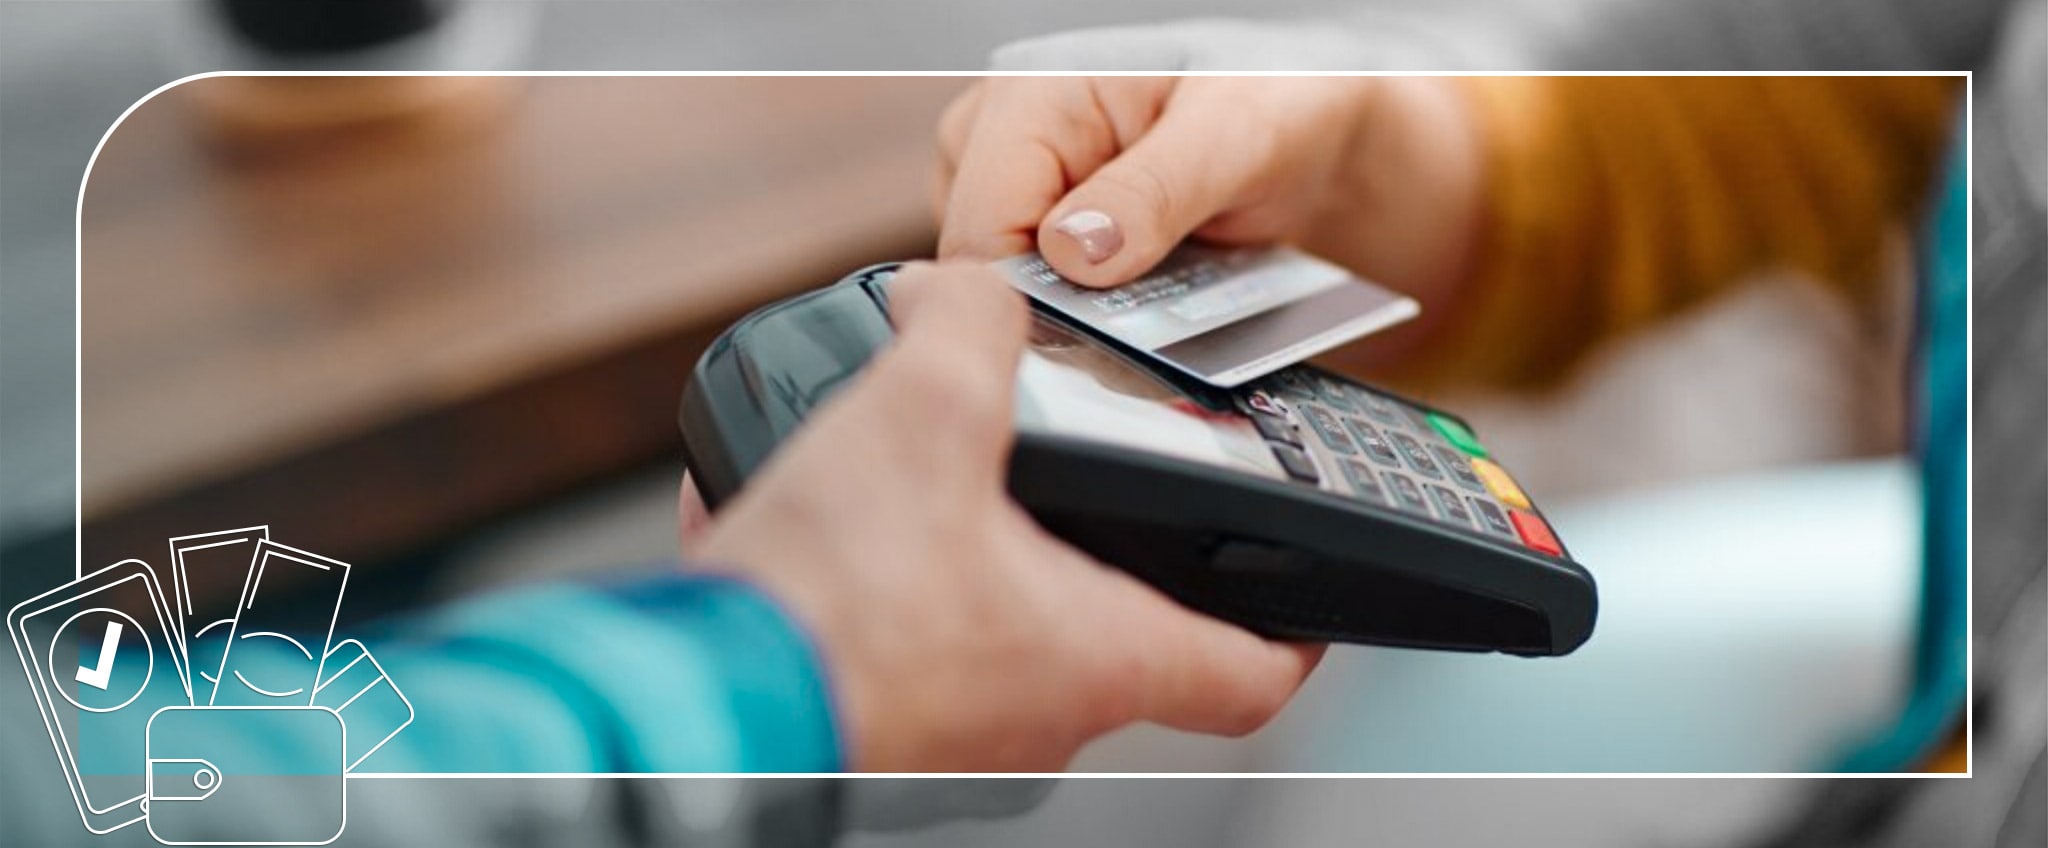 در سرویس پرداخت در محل، مشتری باید در نوع پرداخت خود، حق انتخاب داشته باشد. برای مثال وجه نقد بپردازد یا کارت بکشد یا به صورت آنلاین پرداخت کند. 